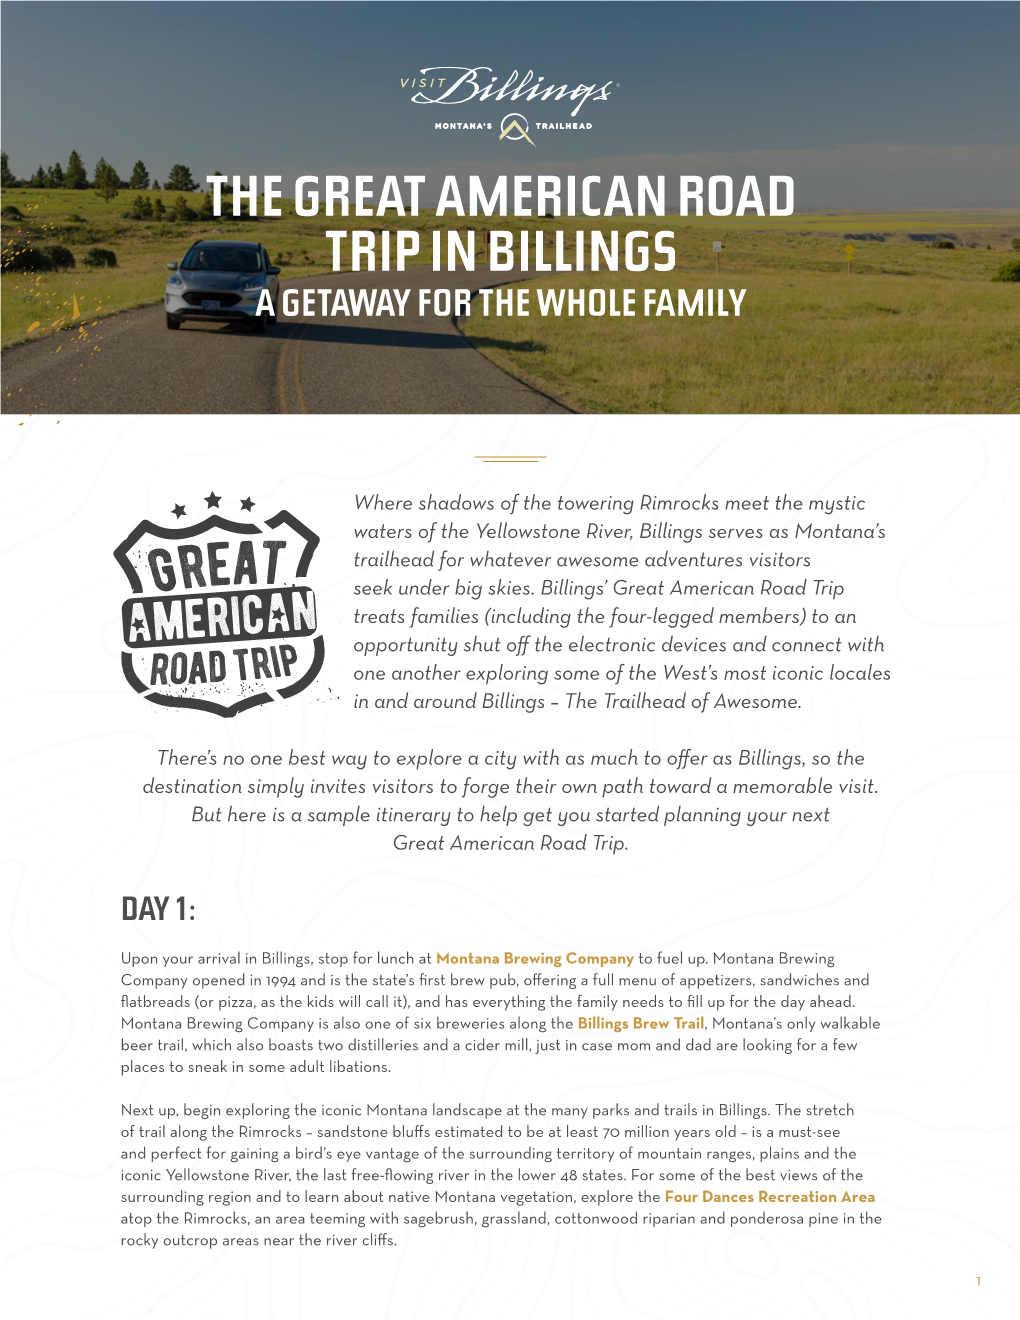 Family Getaway & Great American Road Trip